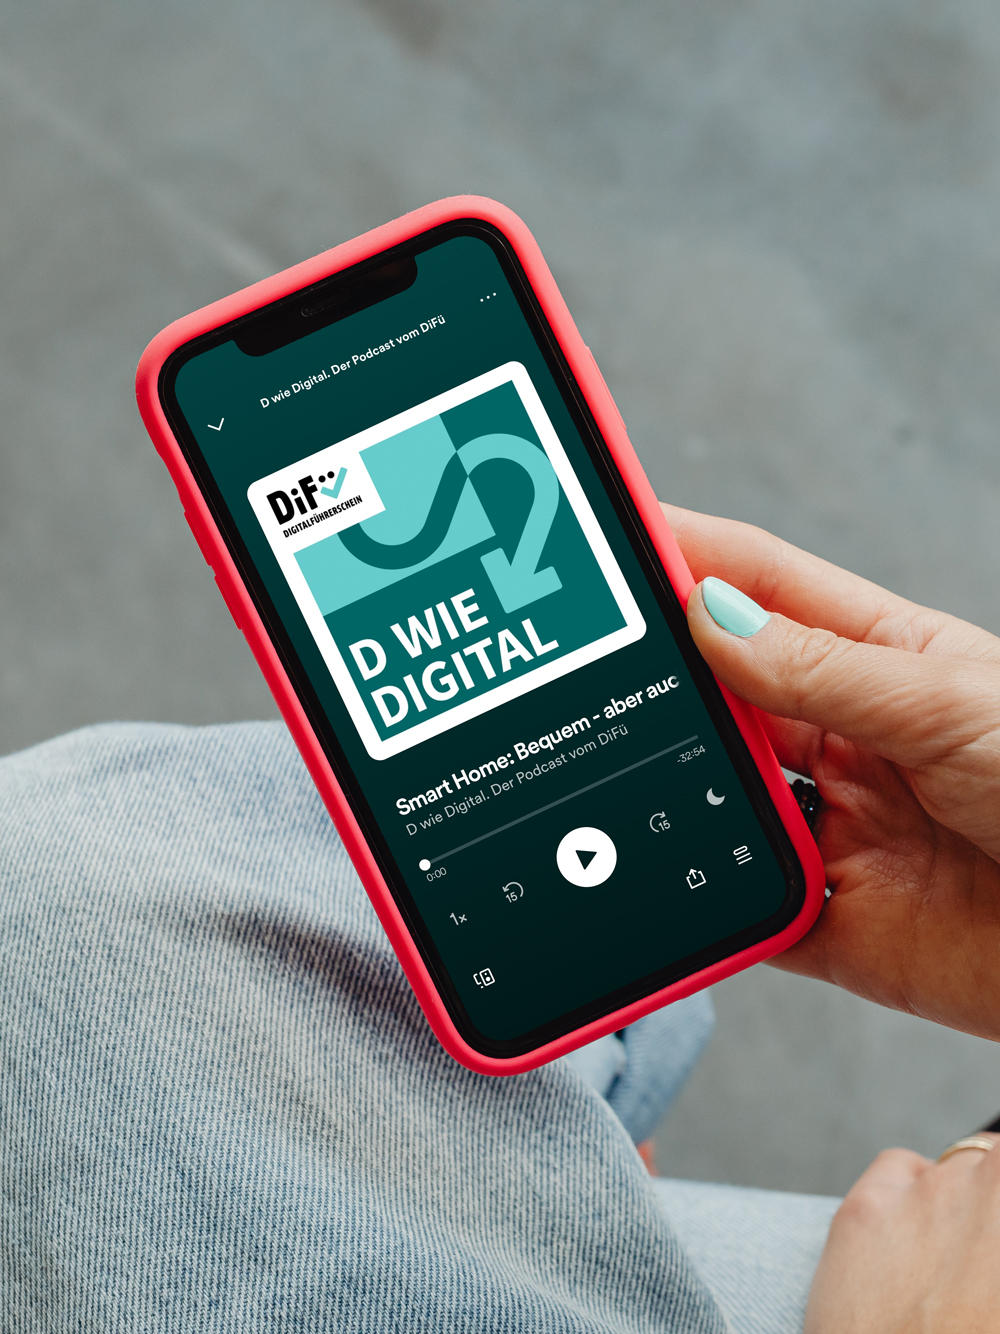 DiFü Digitalführerschein Corporate Design Smartphone Screen zeigt DiFü Podcast Coverbild „D wie Digital“ Visual in helltürkis und dunkeltürkis mit Pfeil Icon